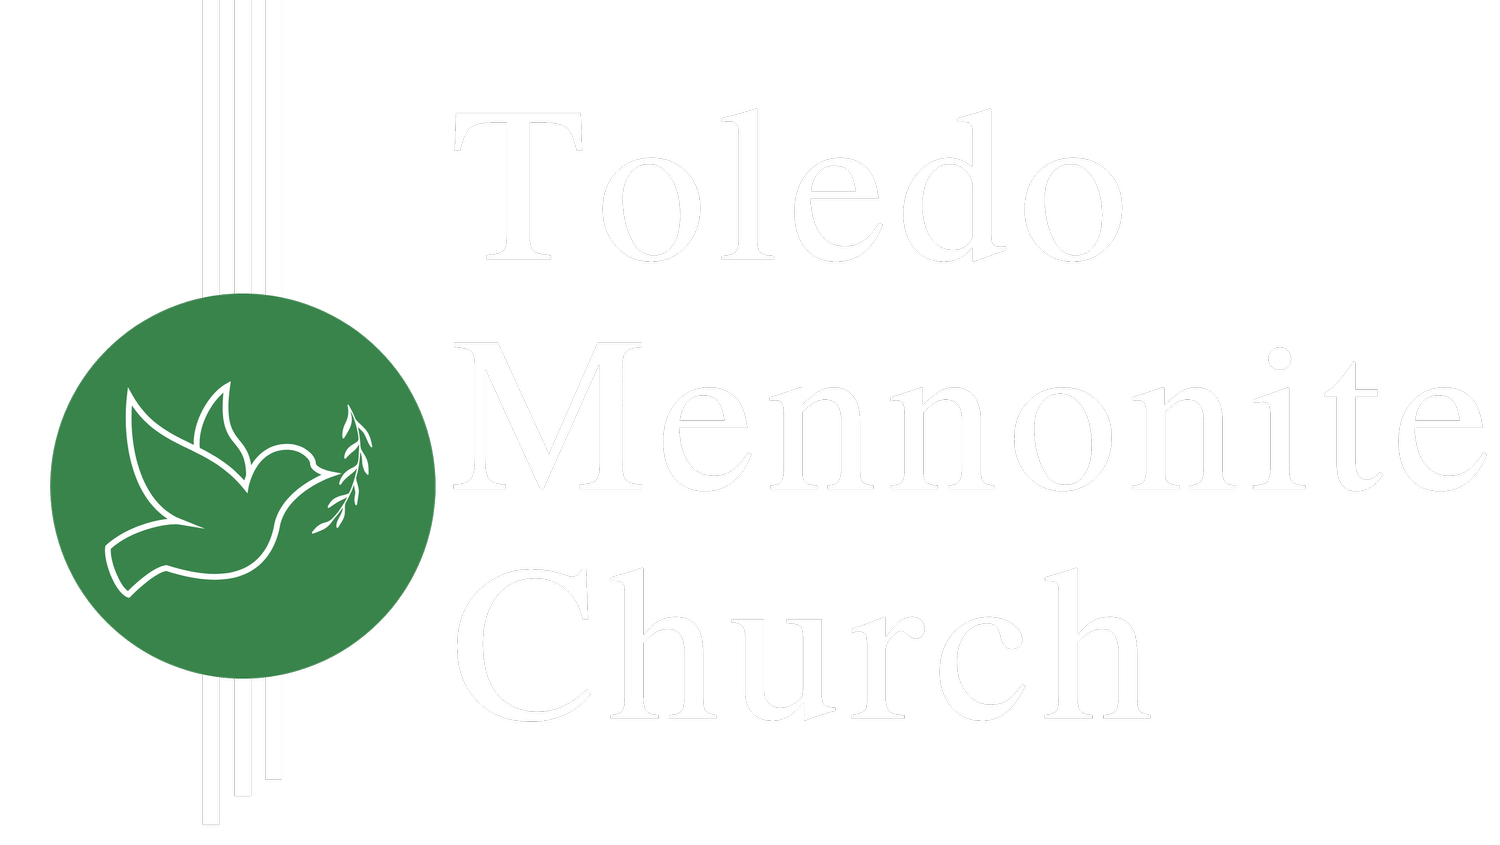 Toledo Mennonite Church